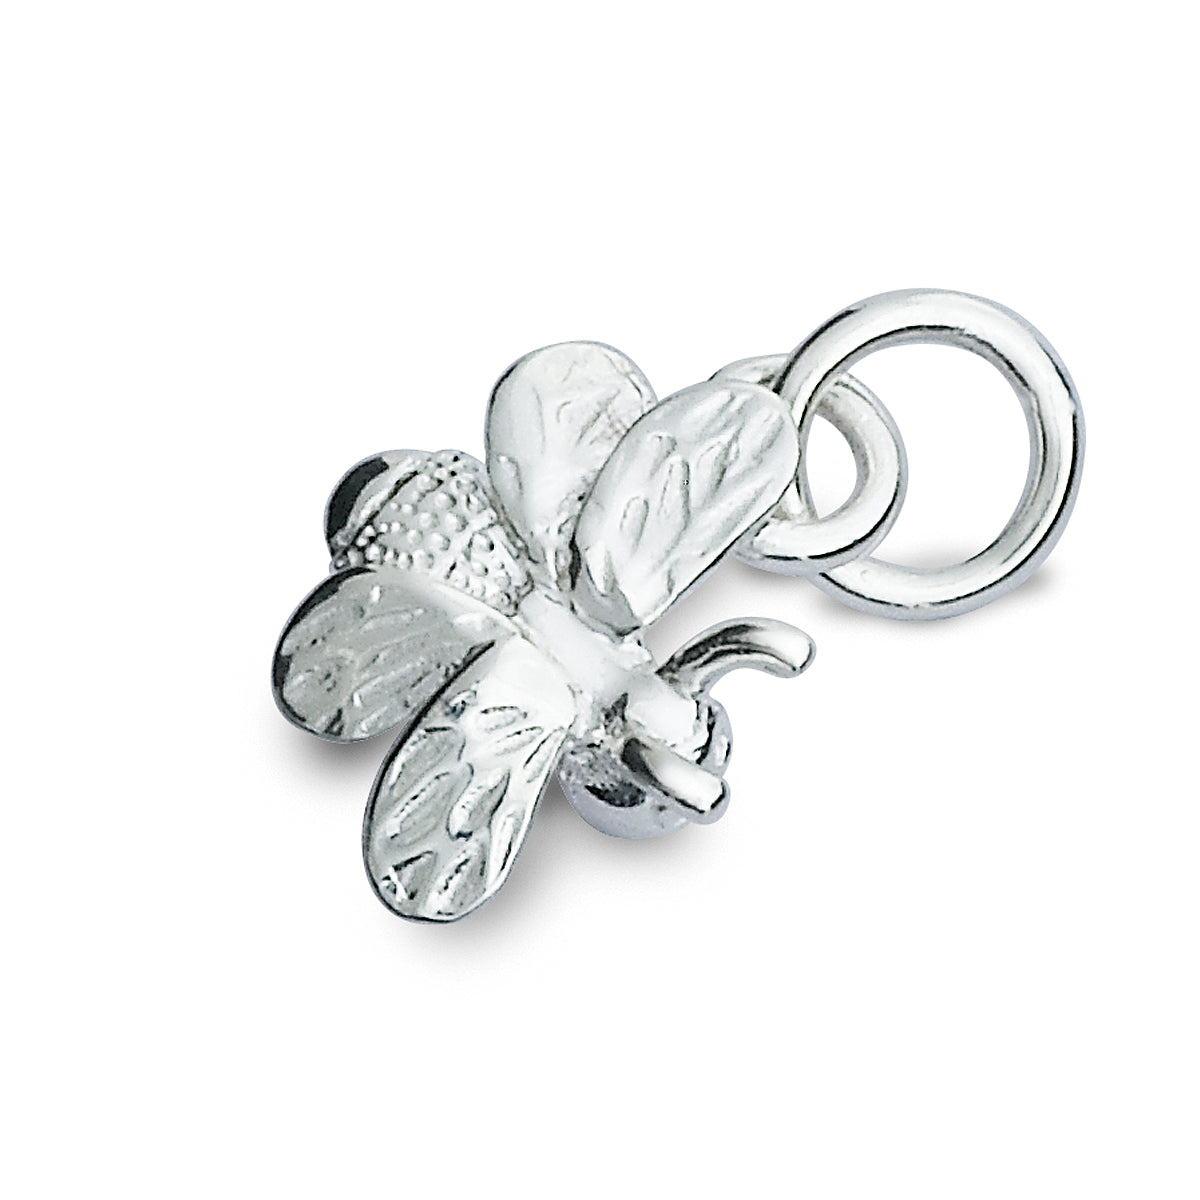 Bumble Bee Silver Bracelet Charm Scarlett Jewellery